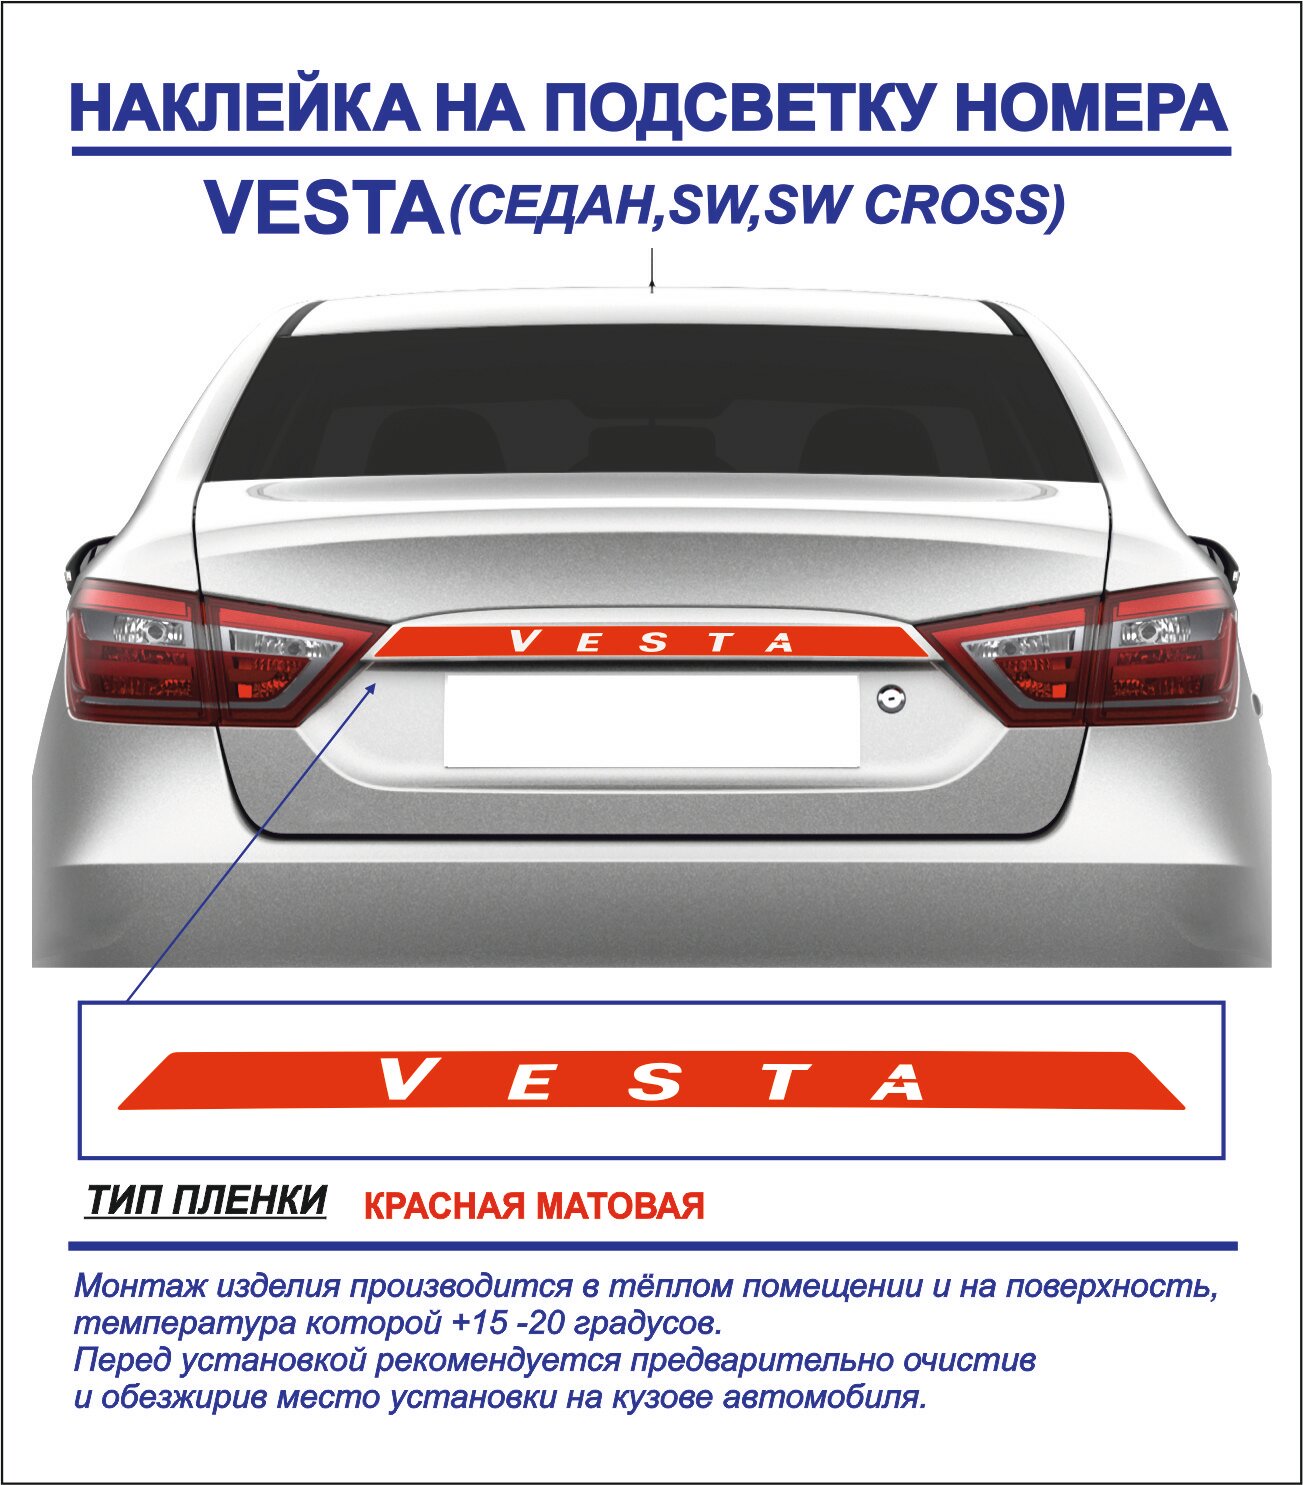 Наклейка тюнинг на подсветку номера Lada Vesta седан sw sw cross (красная матовая) 1шт.